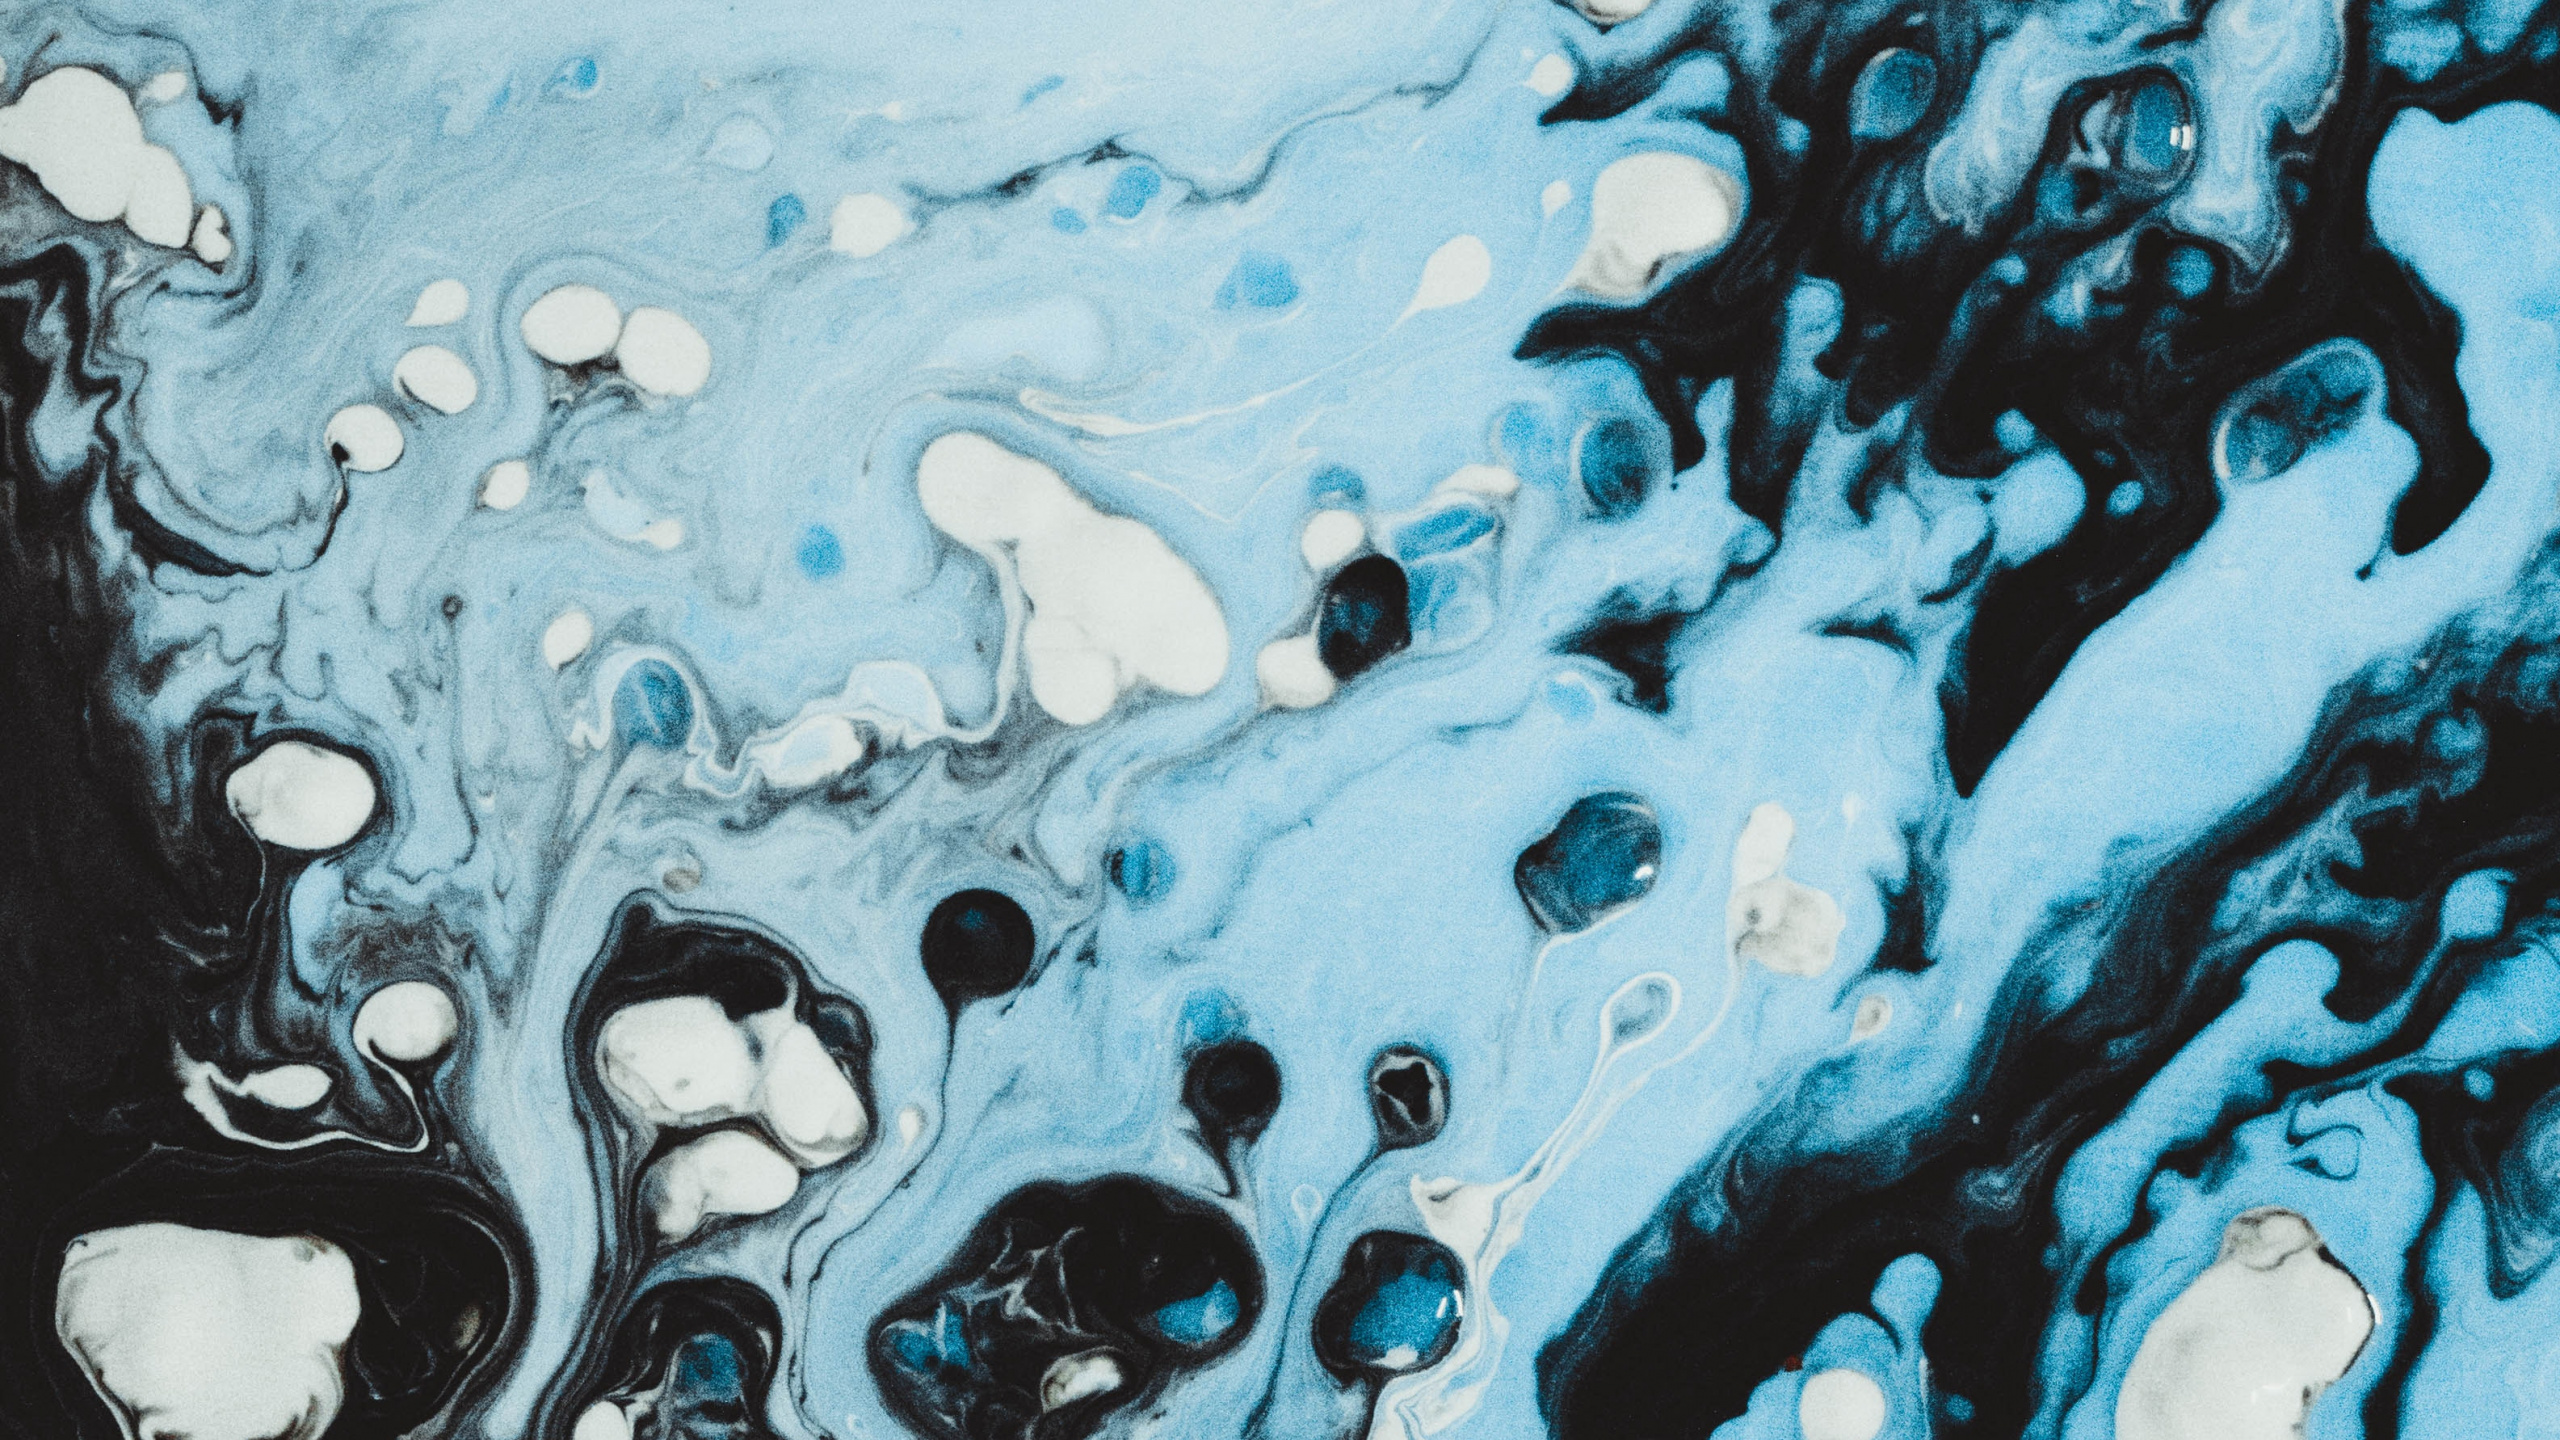 Blaue Und Weiße Wasserspritzer. Wallpaper in 2560x1440 Resolution